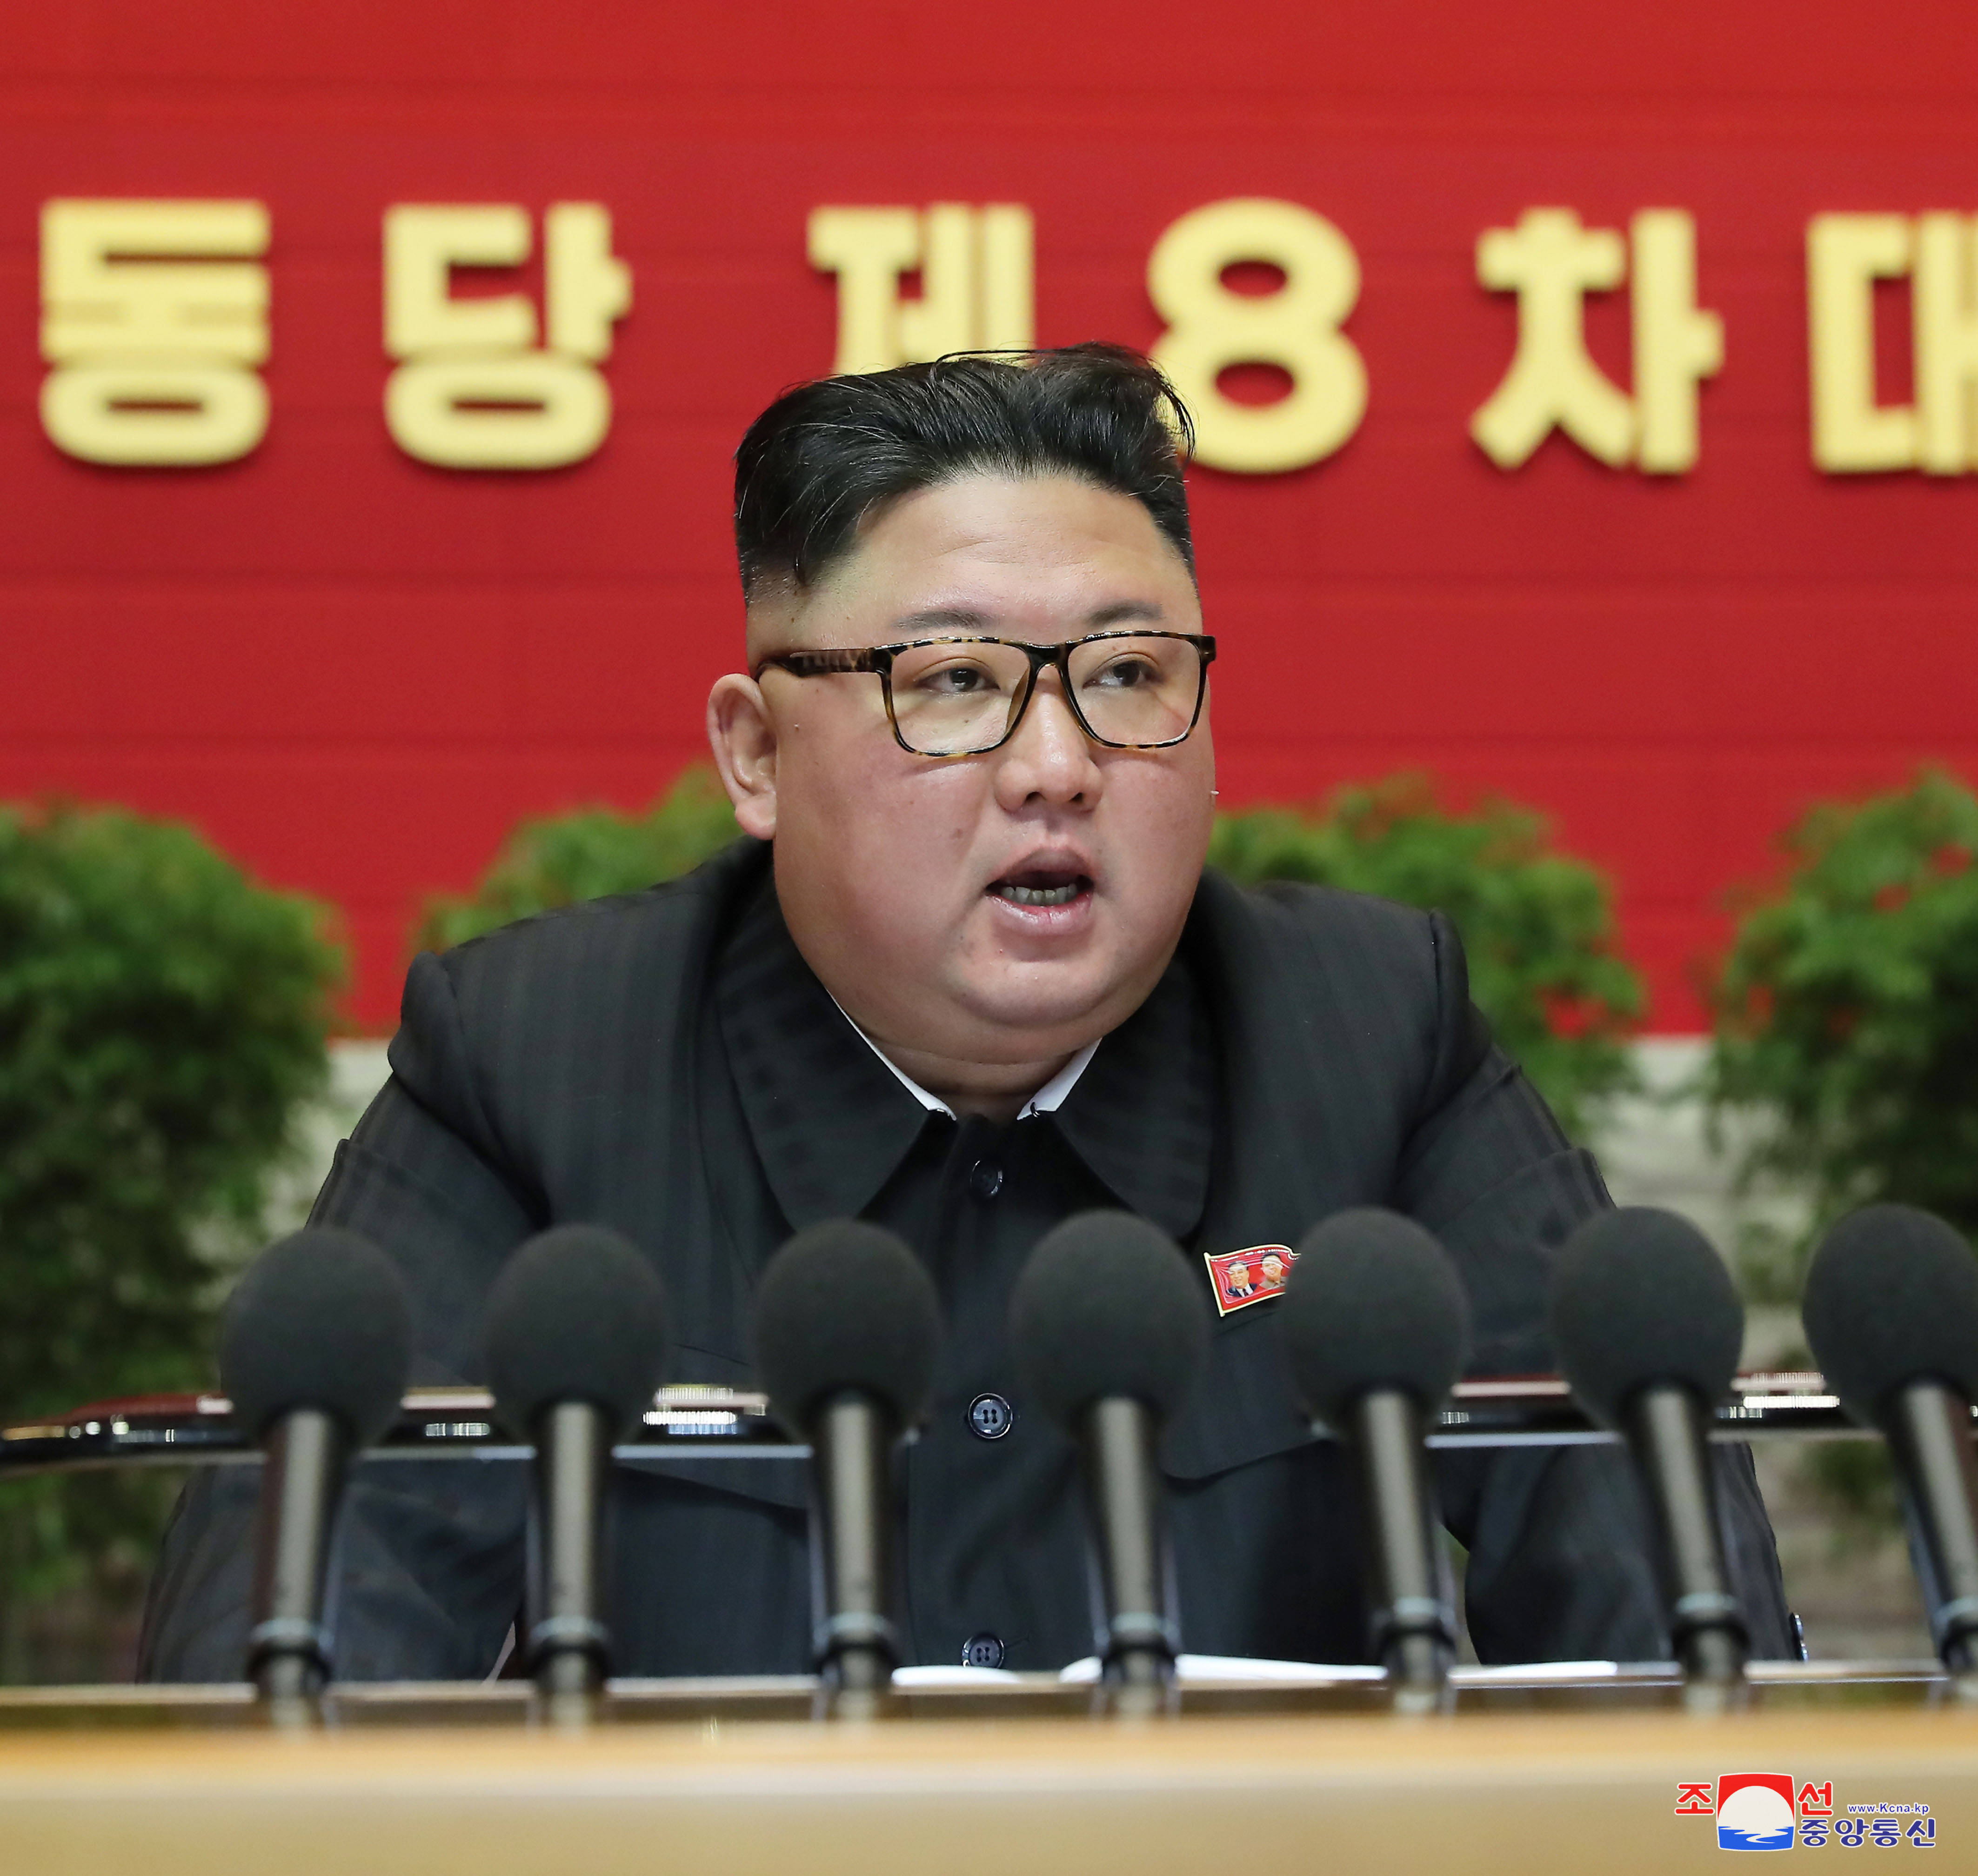 这张朝中社1月9日提供的照片显示,1月5日至7日间,朝鲜劳动党委员长,国